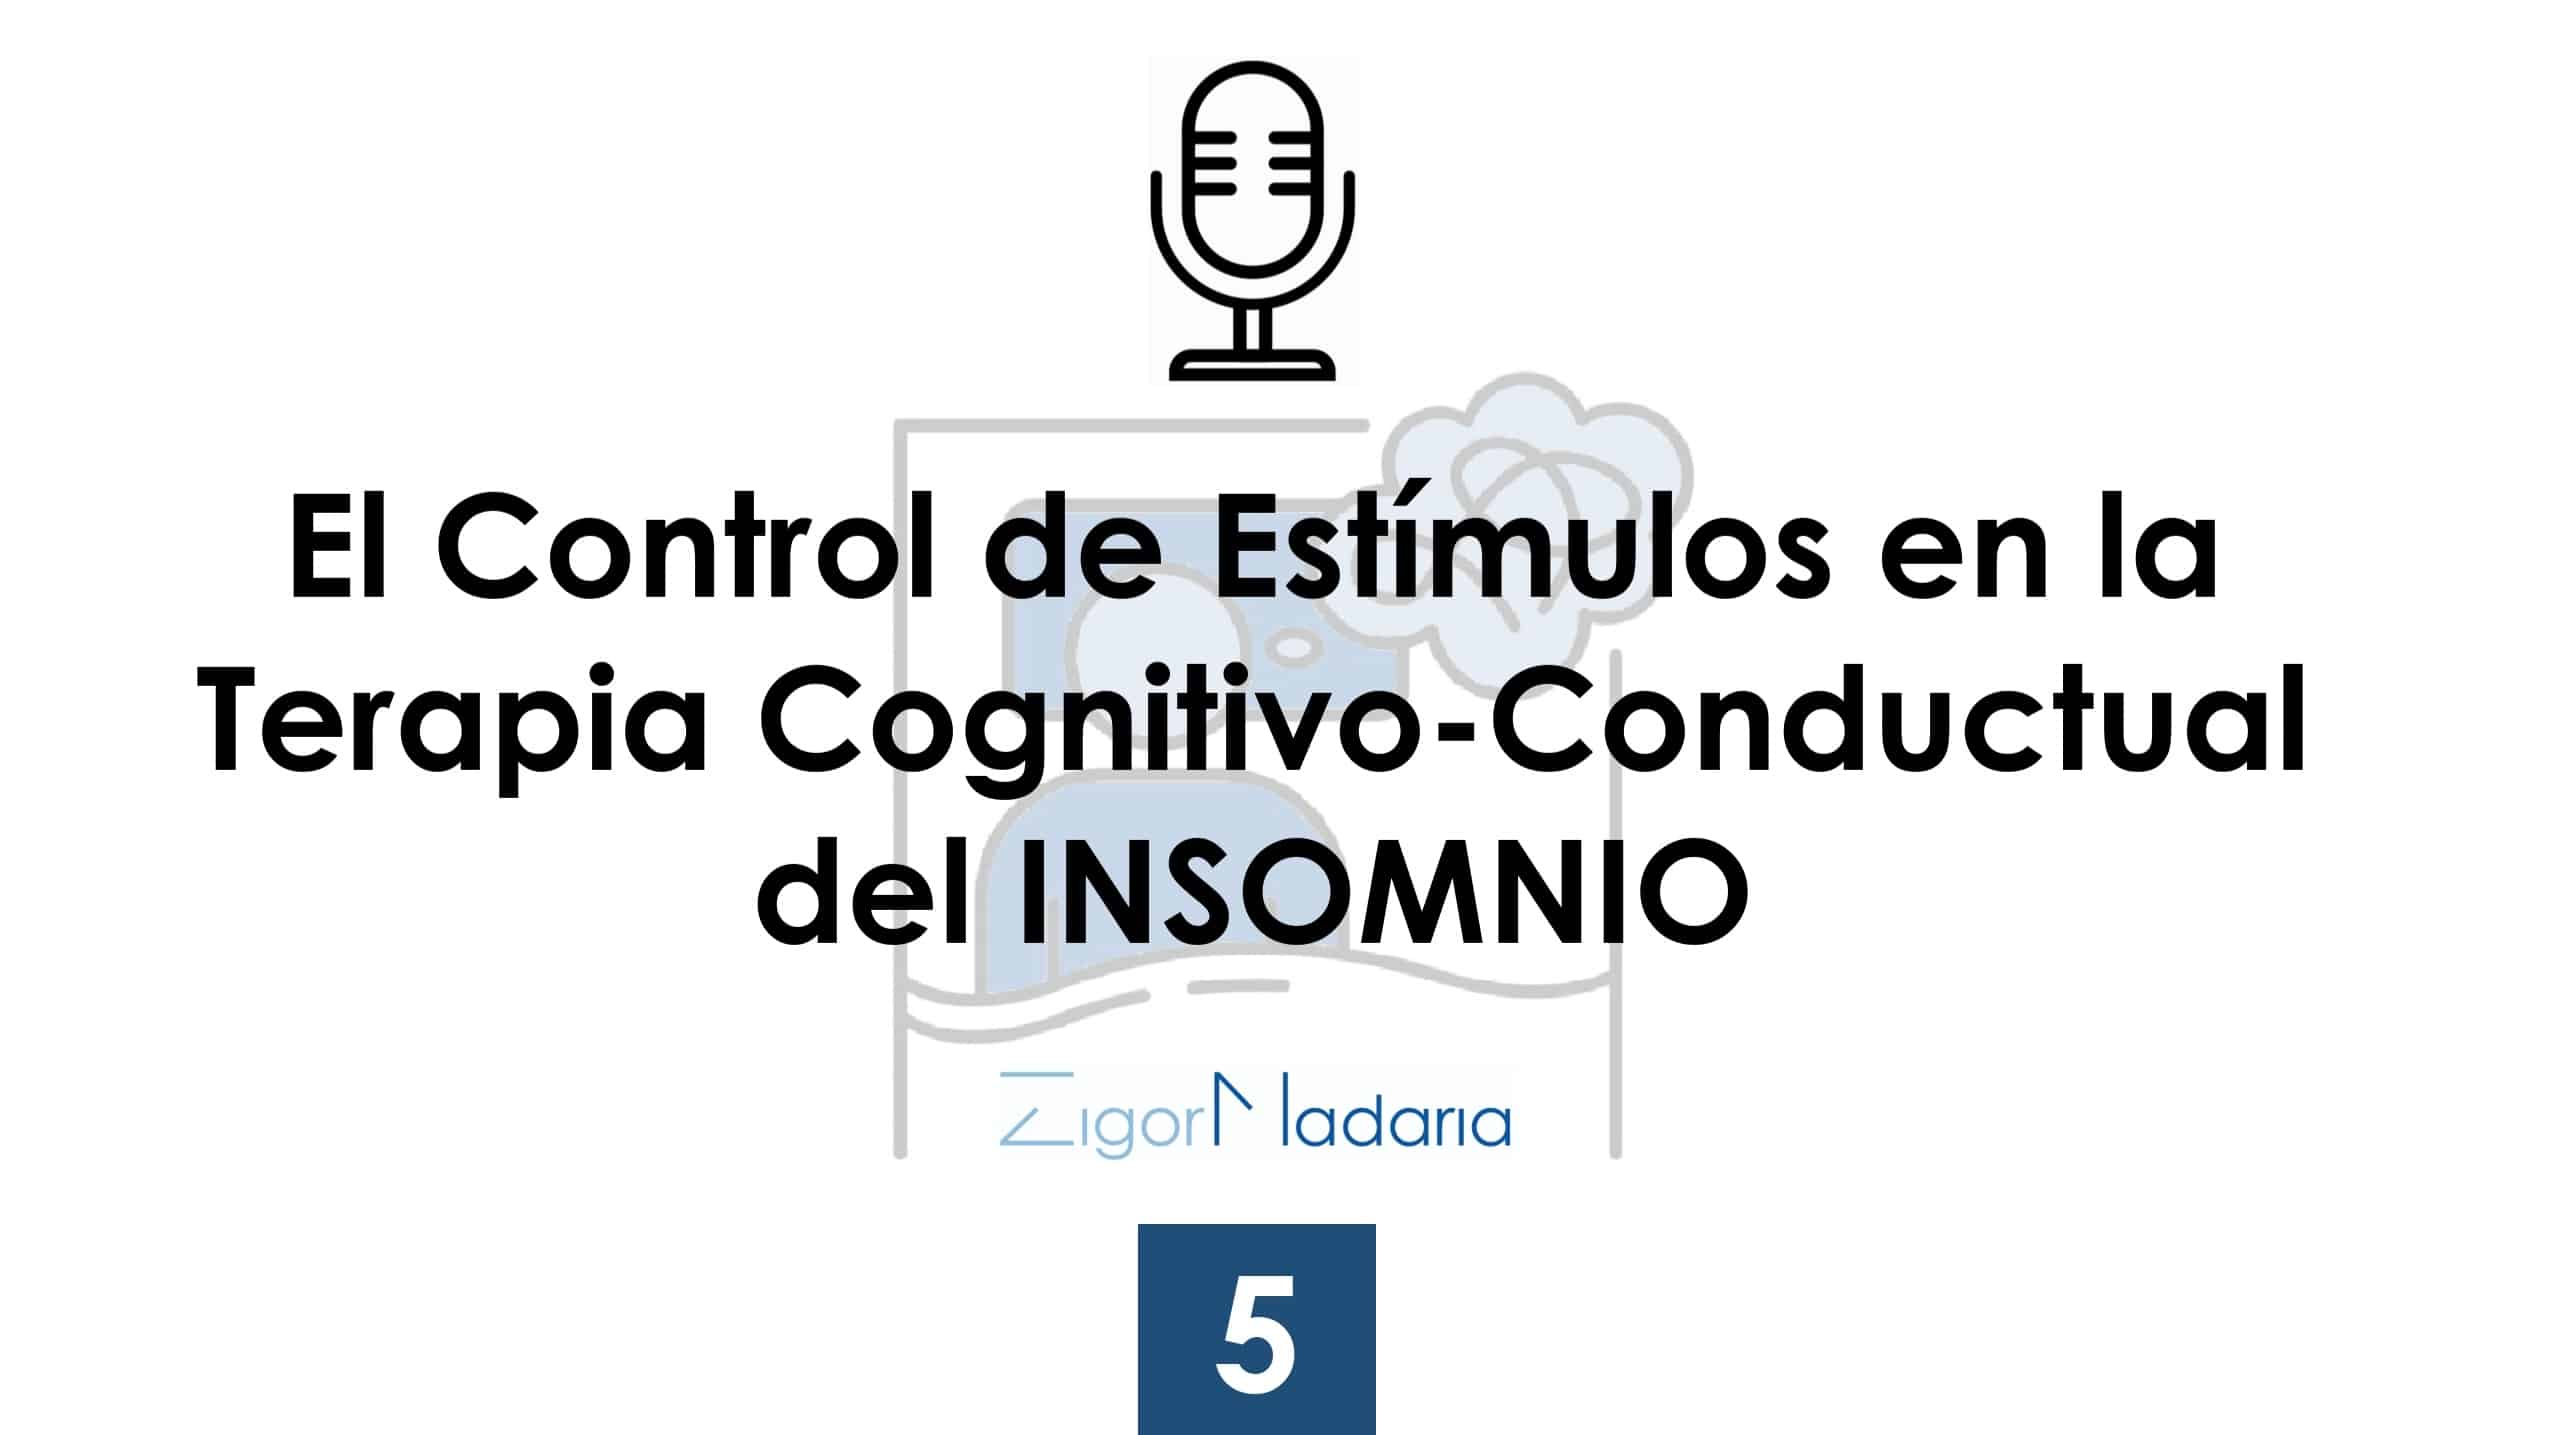 5. El Control de Estímulos en la Terapia Cognitivo-Conductual del insomnio